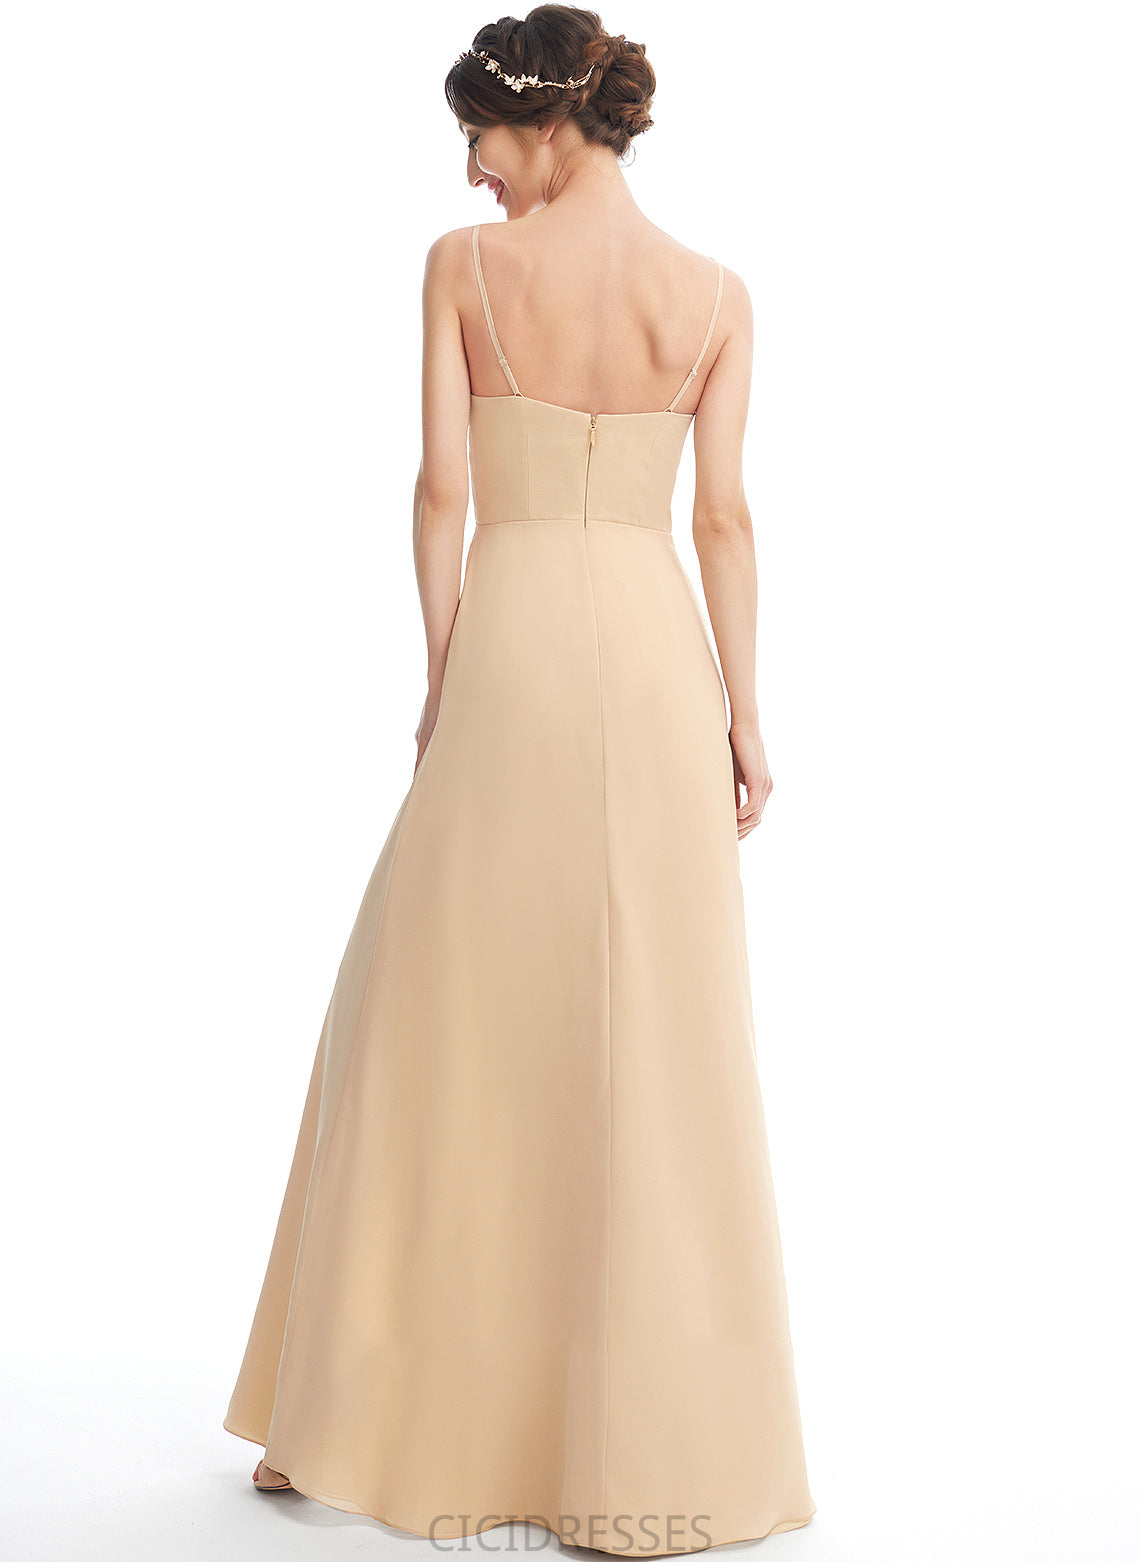 SquareNeckline Embellishment Floor-Length SplitFront A-Line Fabric Silhouette Neckline Length Amari V-Neck Natural Waist Bridesmaid Dresses